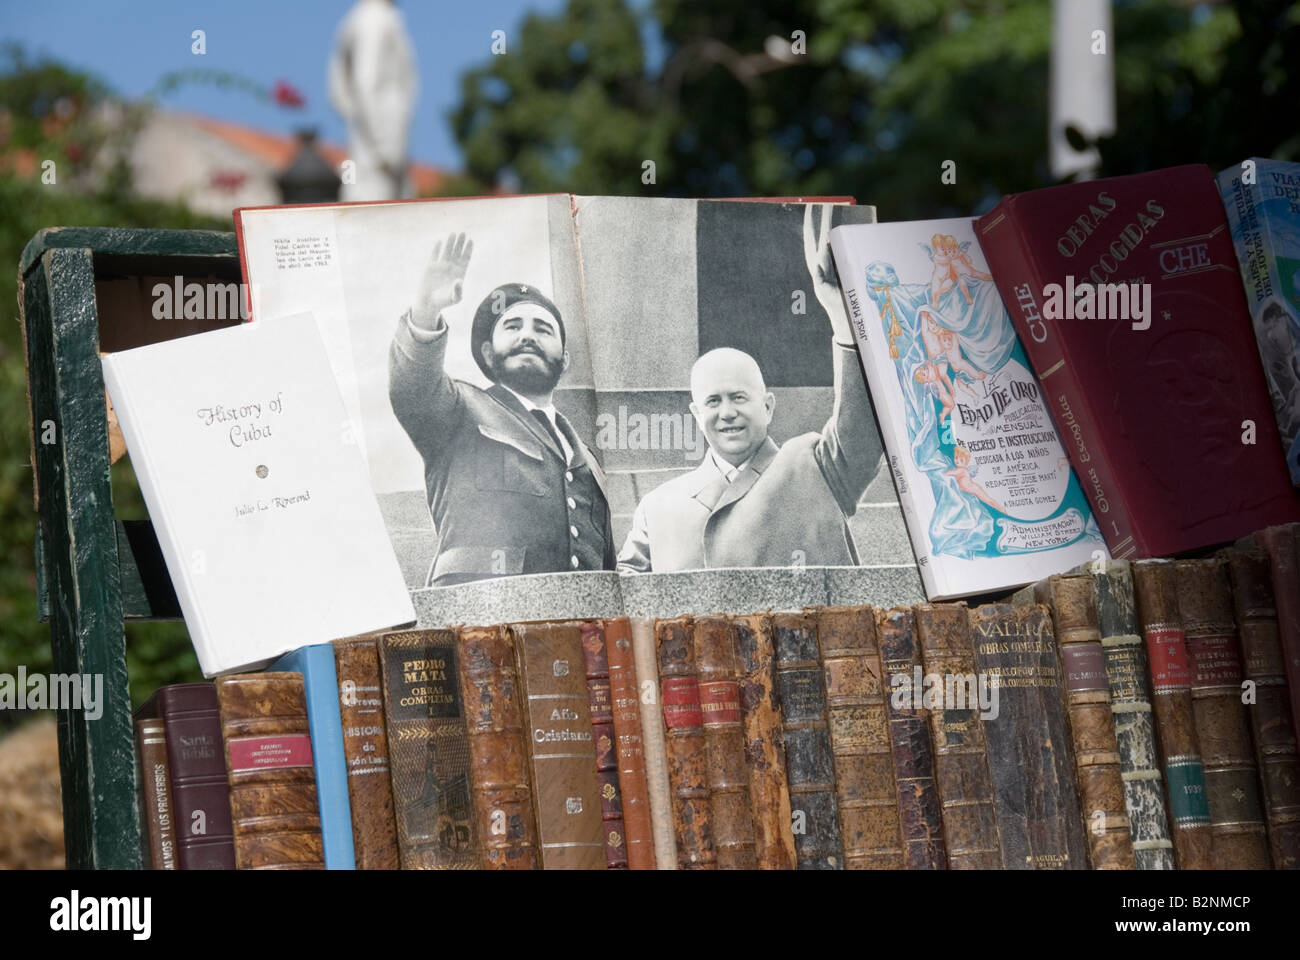 Bild von Fidel Castrol und Russisch delegieren Nikita Jruschov bei einer Buchmarkt am Plaza De Armas in La Habana Vieja Havanna Kuba Stockfoto